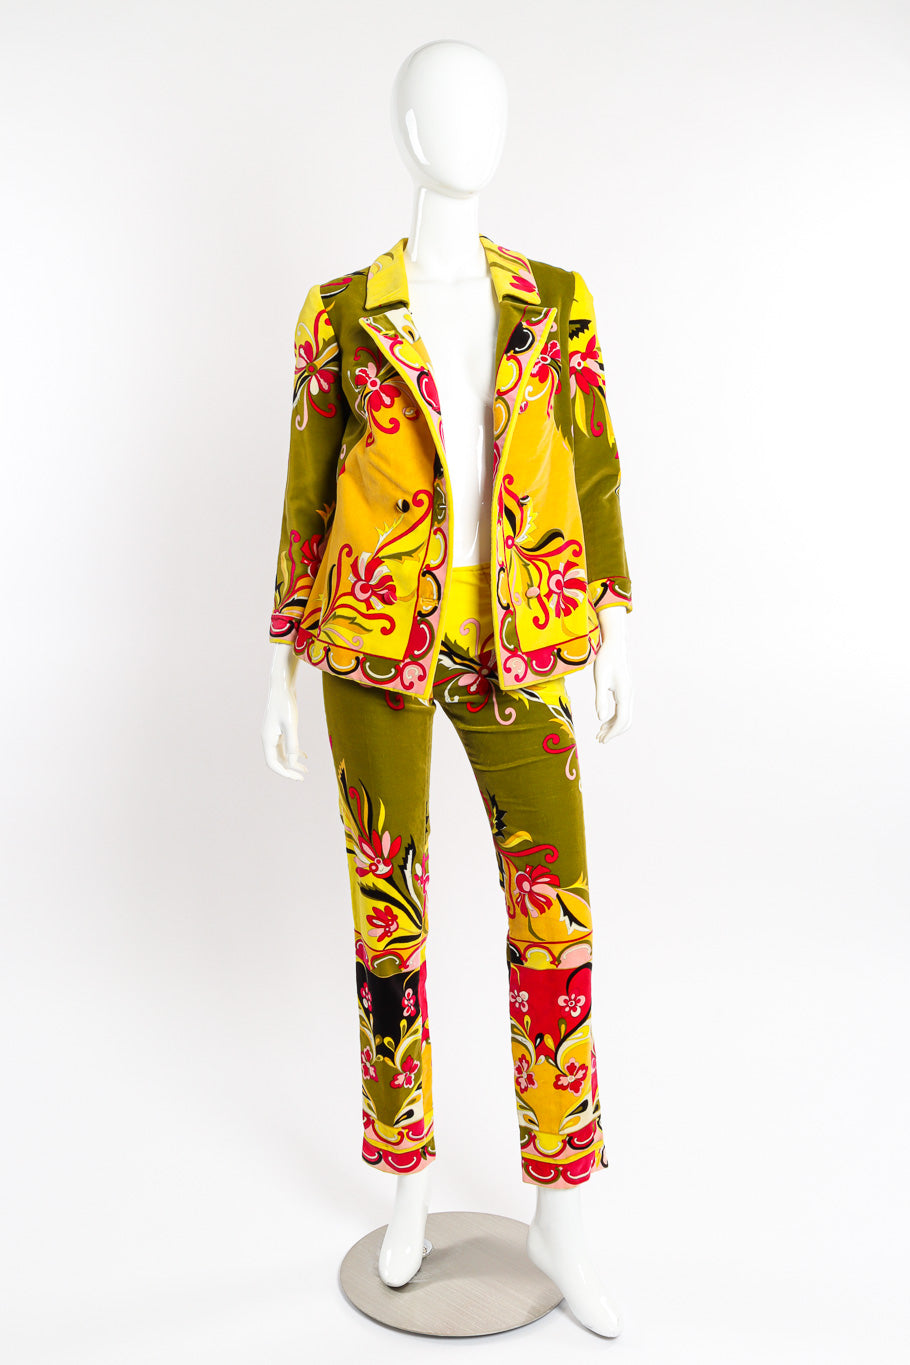 Mod floral pantsuit by Emilio Pucci on mannequin jacket open @recessla